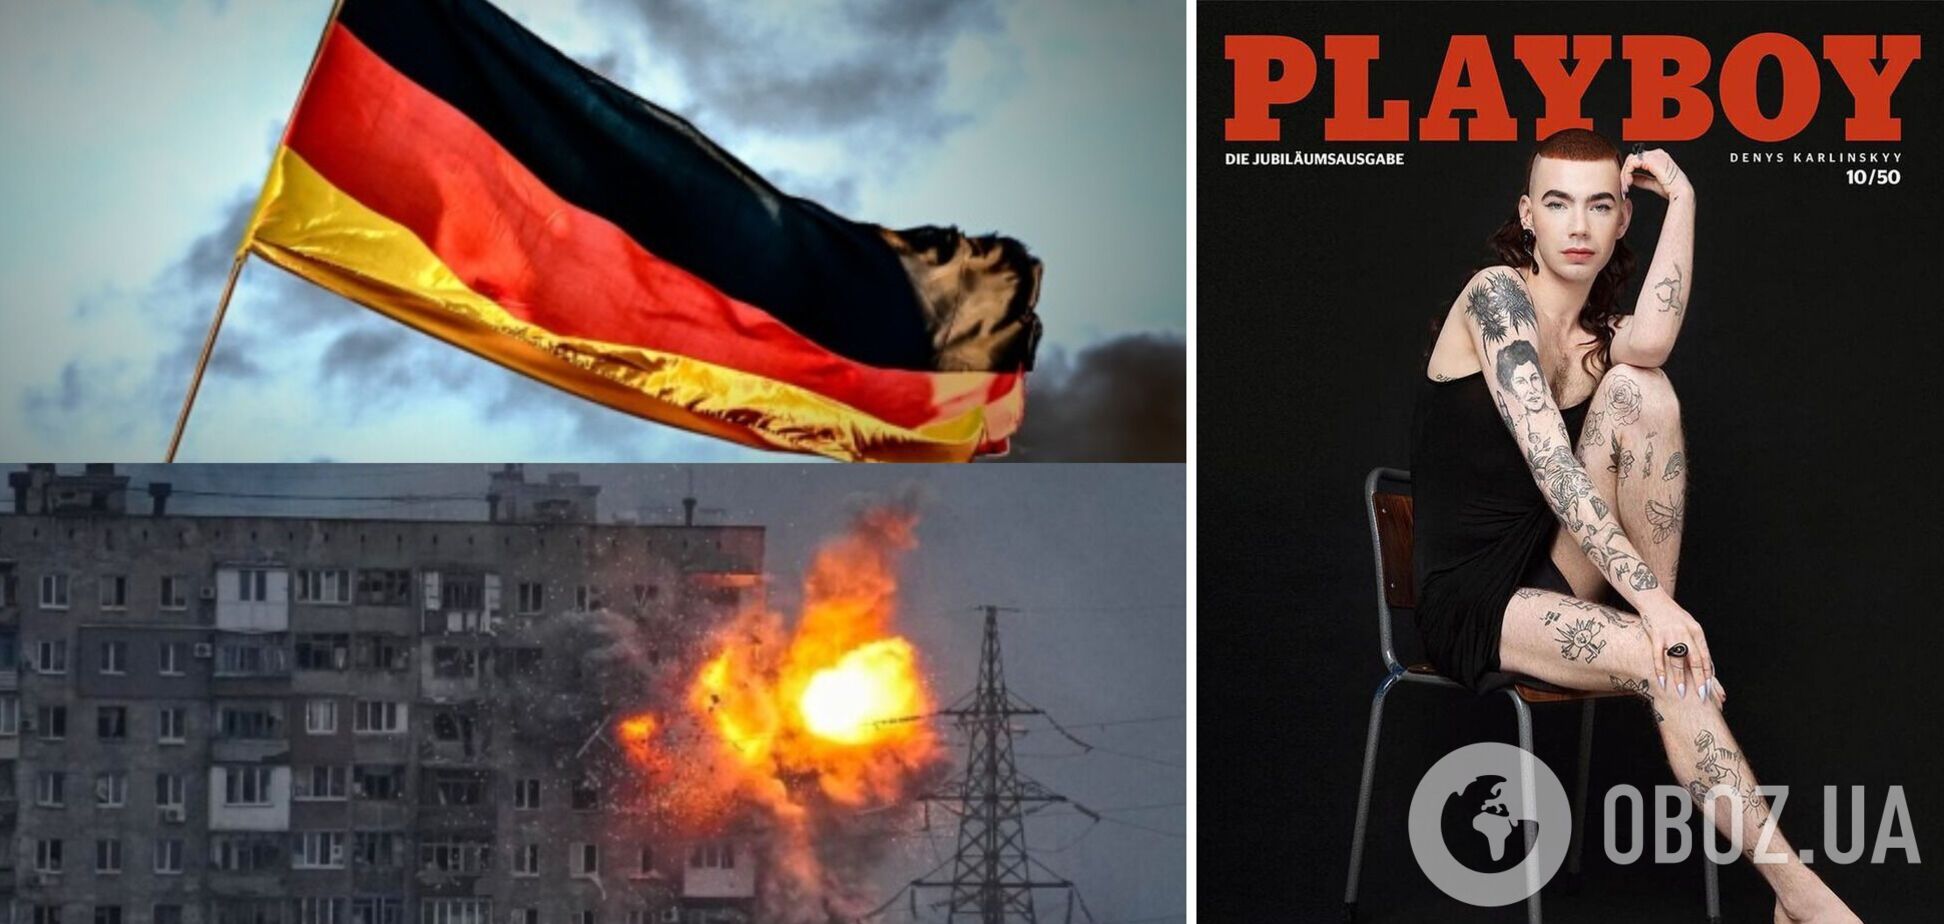 Німецький Playboy потрапив у скандал через сміливу обкладинку. Знімок робив фотограф із Маріуполя